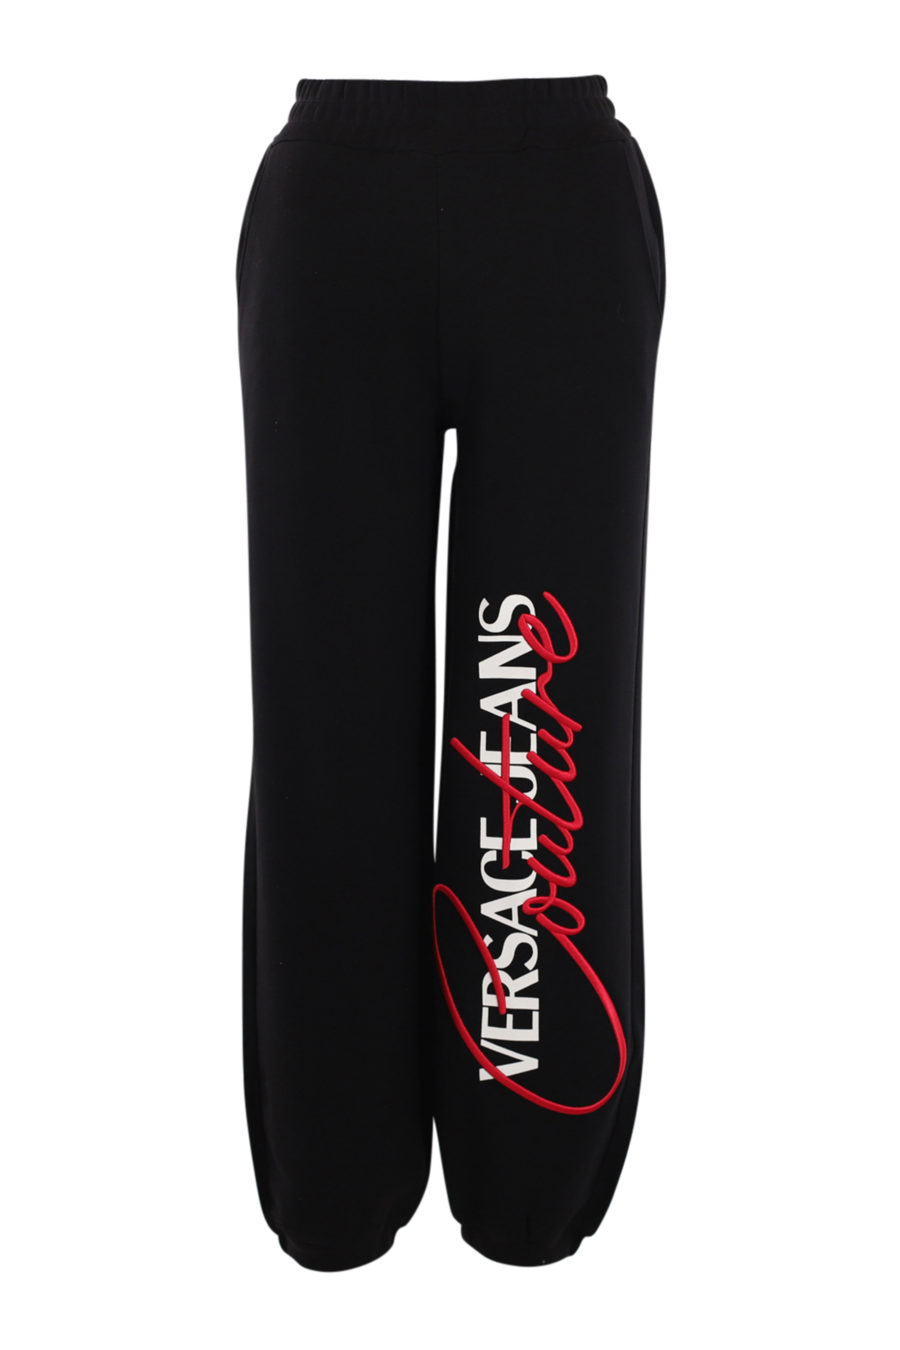 Pantalón chándal negro con logo grande lateral - IMG 0543